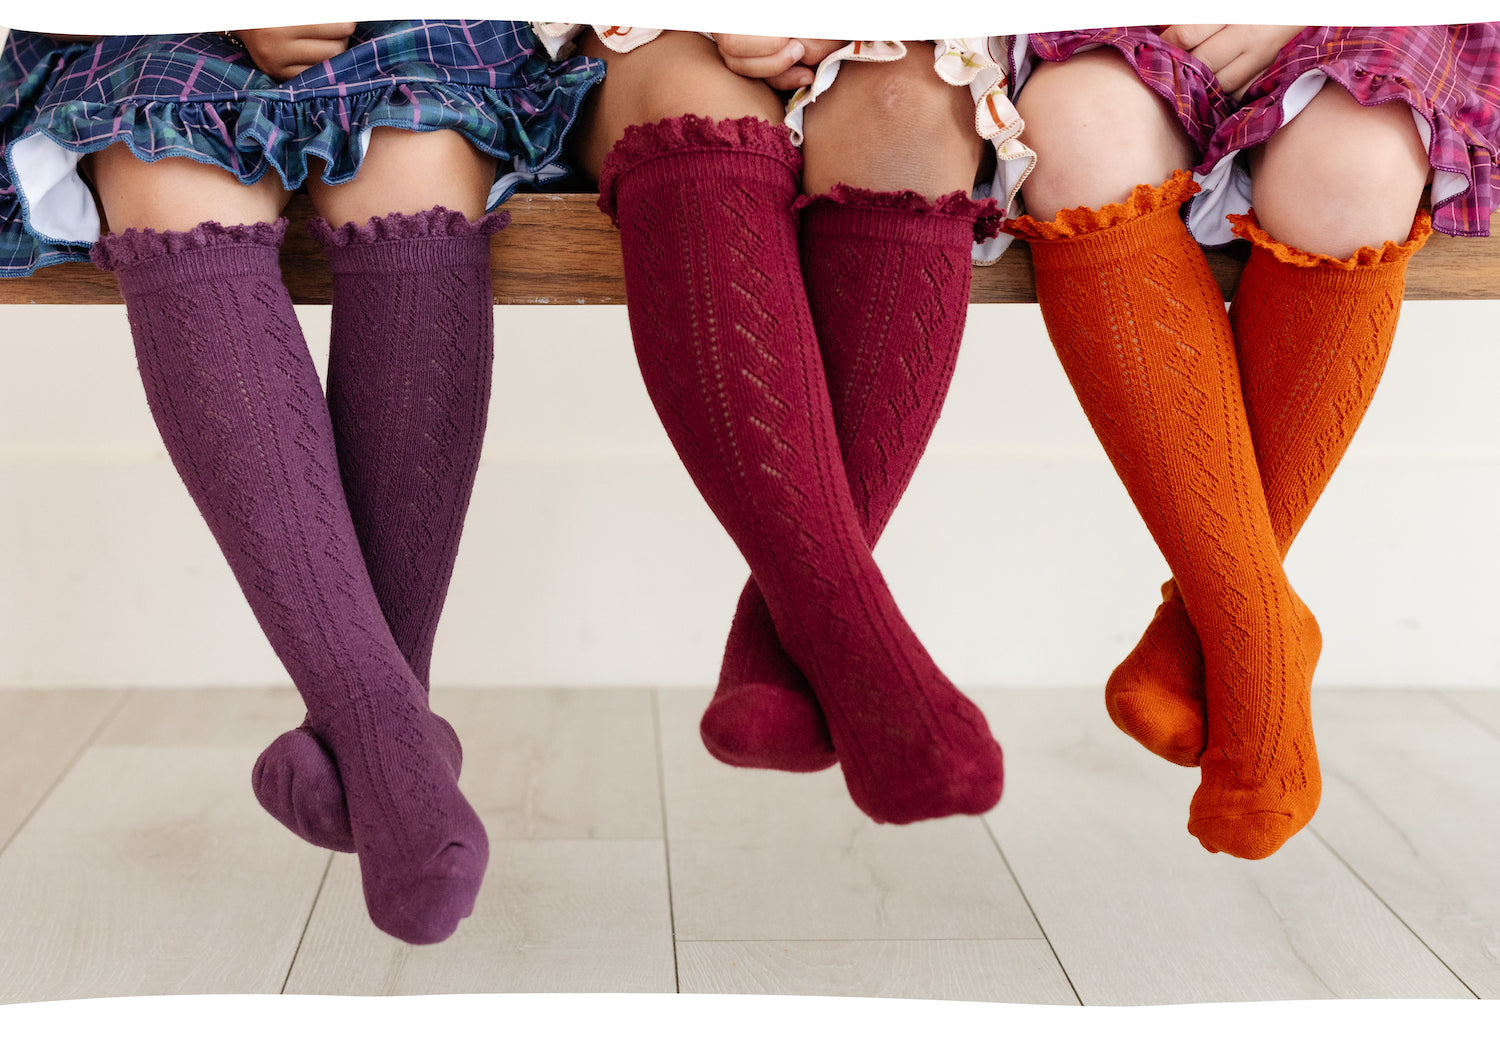 girls crossed legs in fancy crochet knee high socks with lace